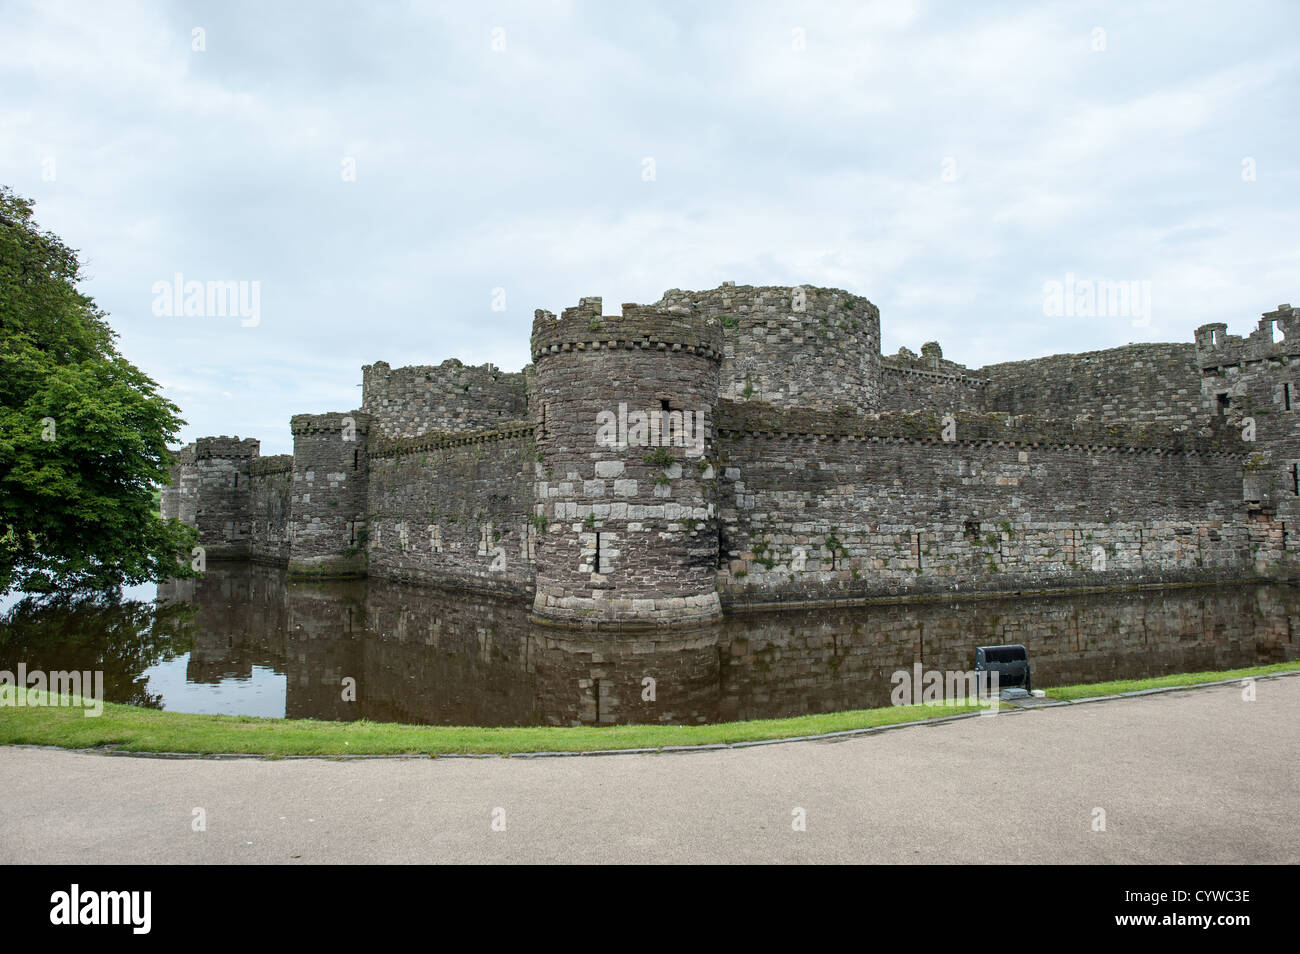 BEAUMARIS, Galles - le mura del Castello di Beaumaris sull'isola di Anglesey della costa settentrionale del Galles, Regno Unito. Il castello risale al 13th ° secolo ed è uno dei numerosi commissionati da Edoardo I. La pittoresca cittadina costiera di Beaumaris, situata sull'isola di Anglesey, in Galles, offre ai visitatori uno sguardo alla ricca storia della zona, con il suo castello medievale, l'architettura vittoriana e il panoramico lungomare. Il Beaumaris è stato dichiarato patrimonio dell'umanità dall'UNESCO e continua a affascinare i viaggiatori con i suoi monumenti ben conservati e le sue splendide bellezze naturali. Foto Stock